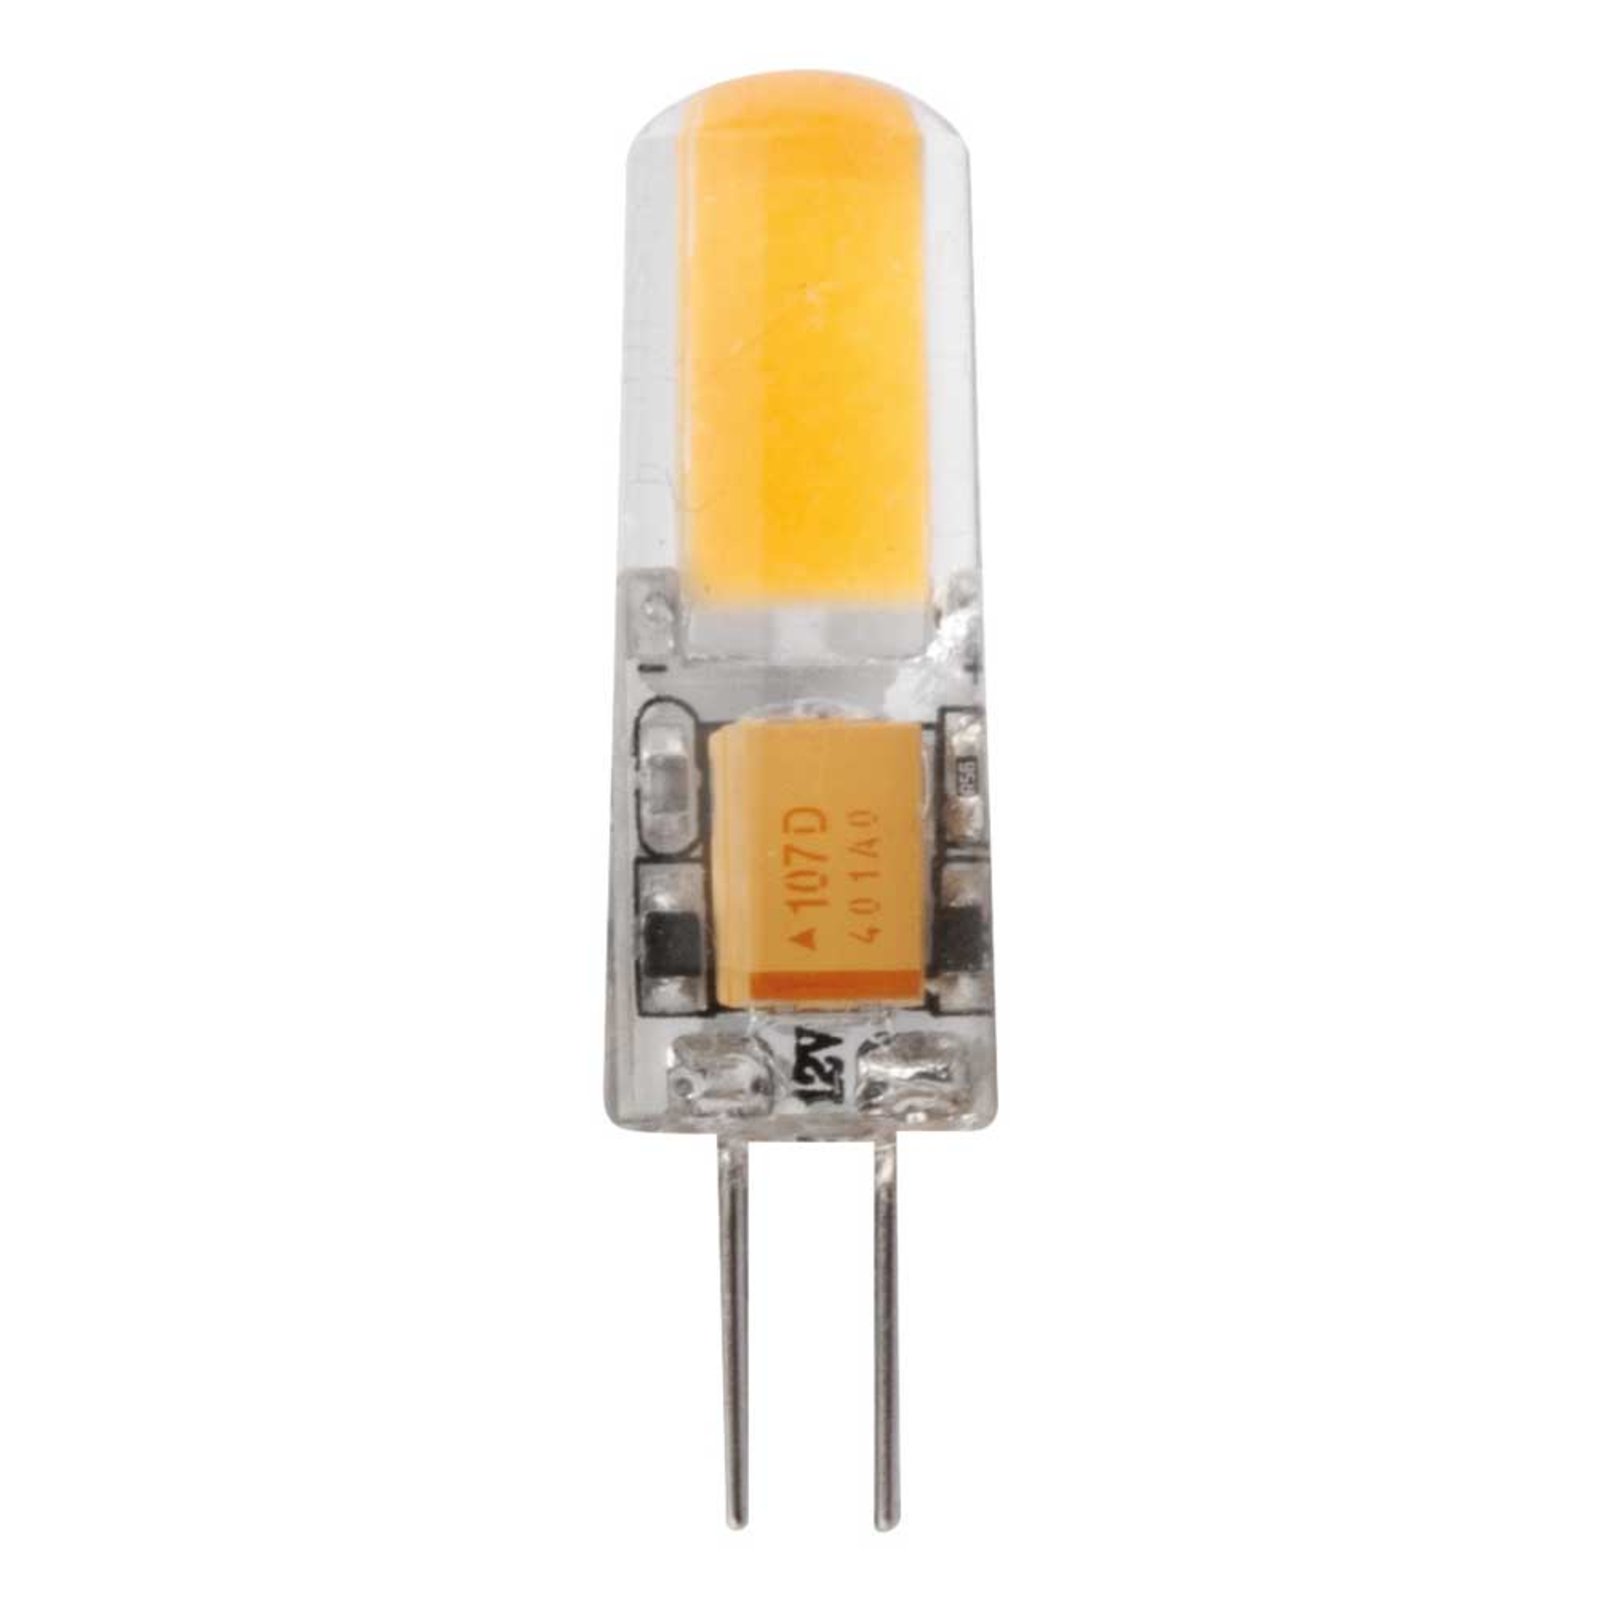 LED stiftlamp G4 1.8W warmwit